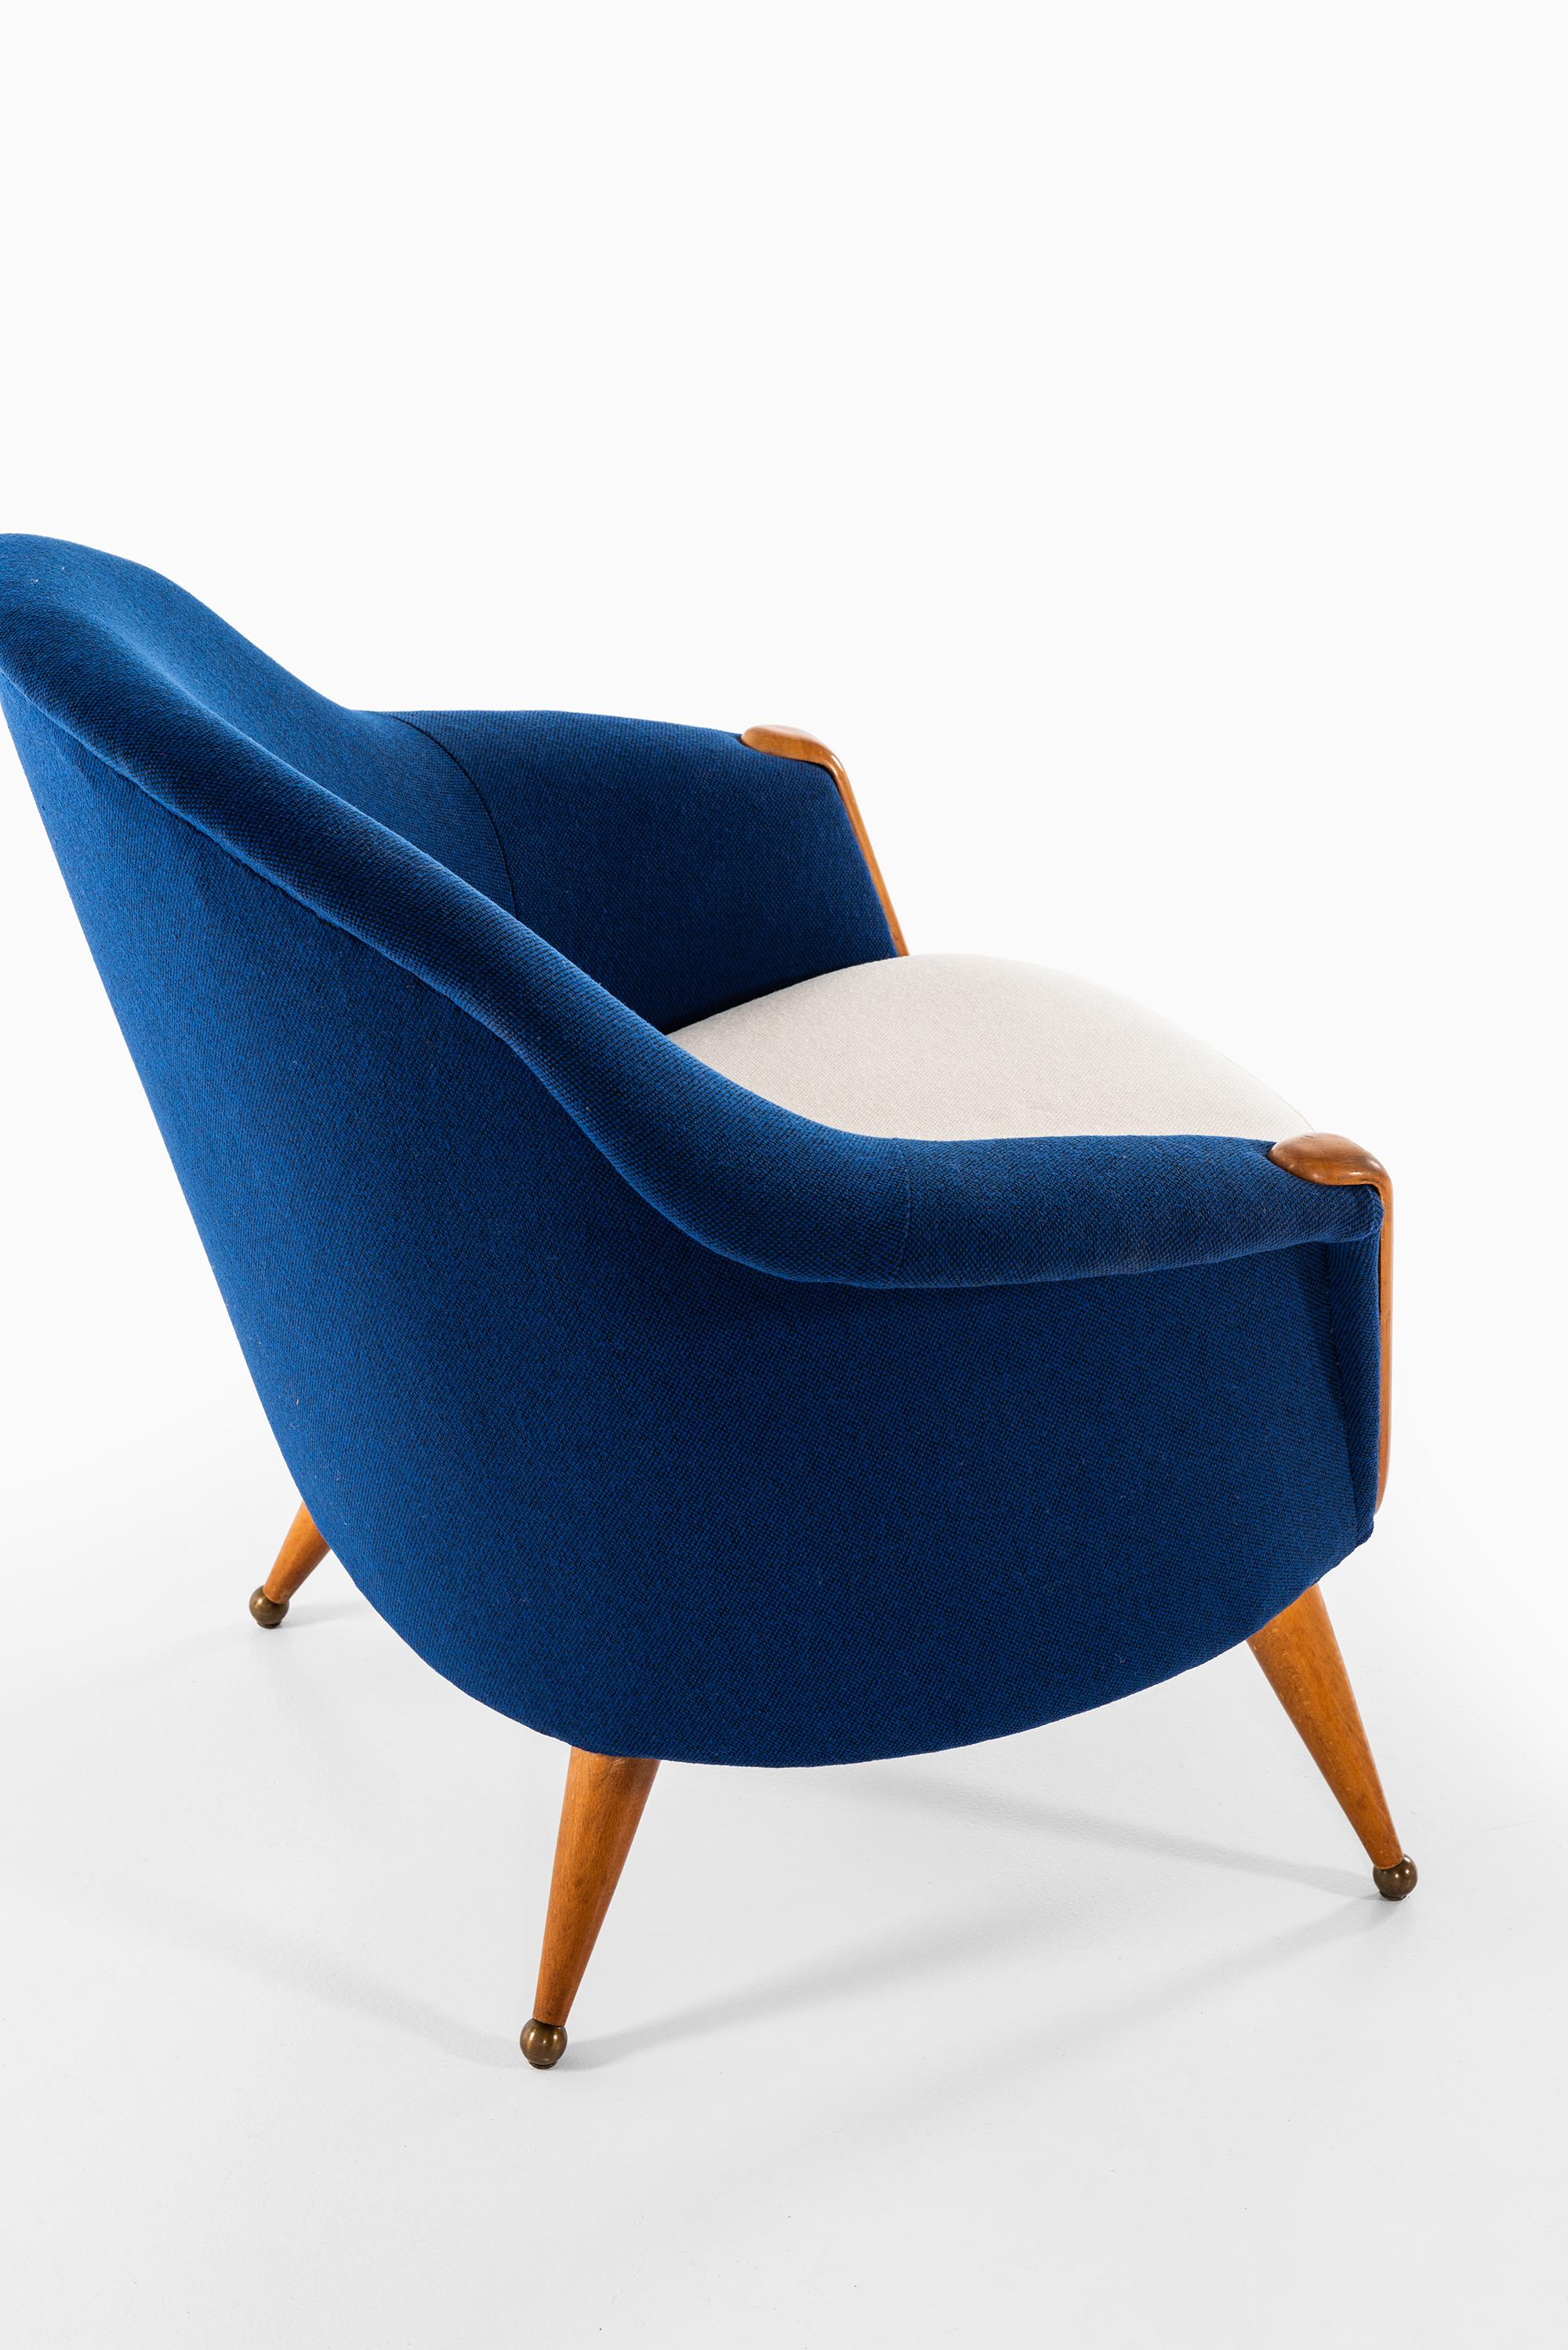 Scandinavian Modern Folke Jansson Easy Chair Model Orion Produced by SM Wincrantz in Sweden